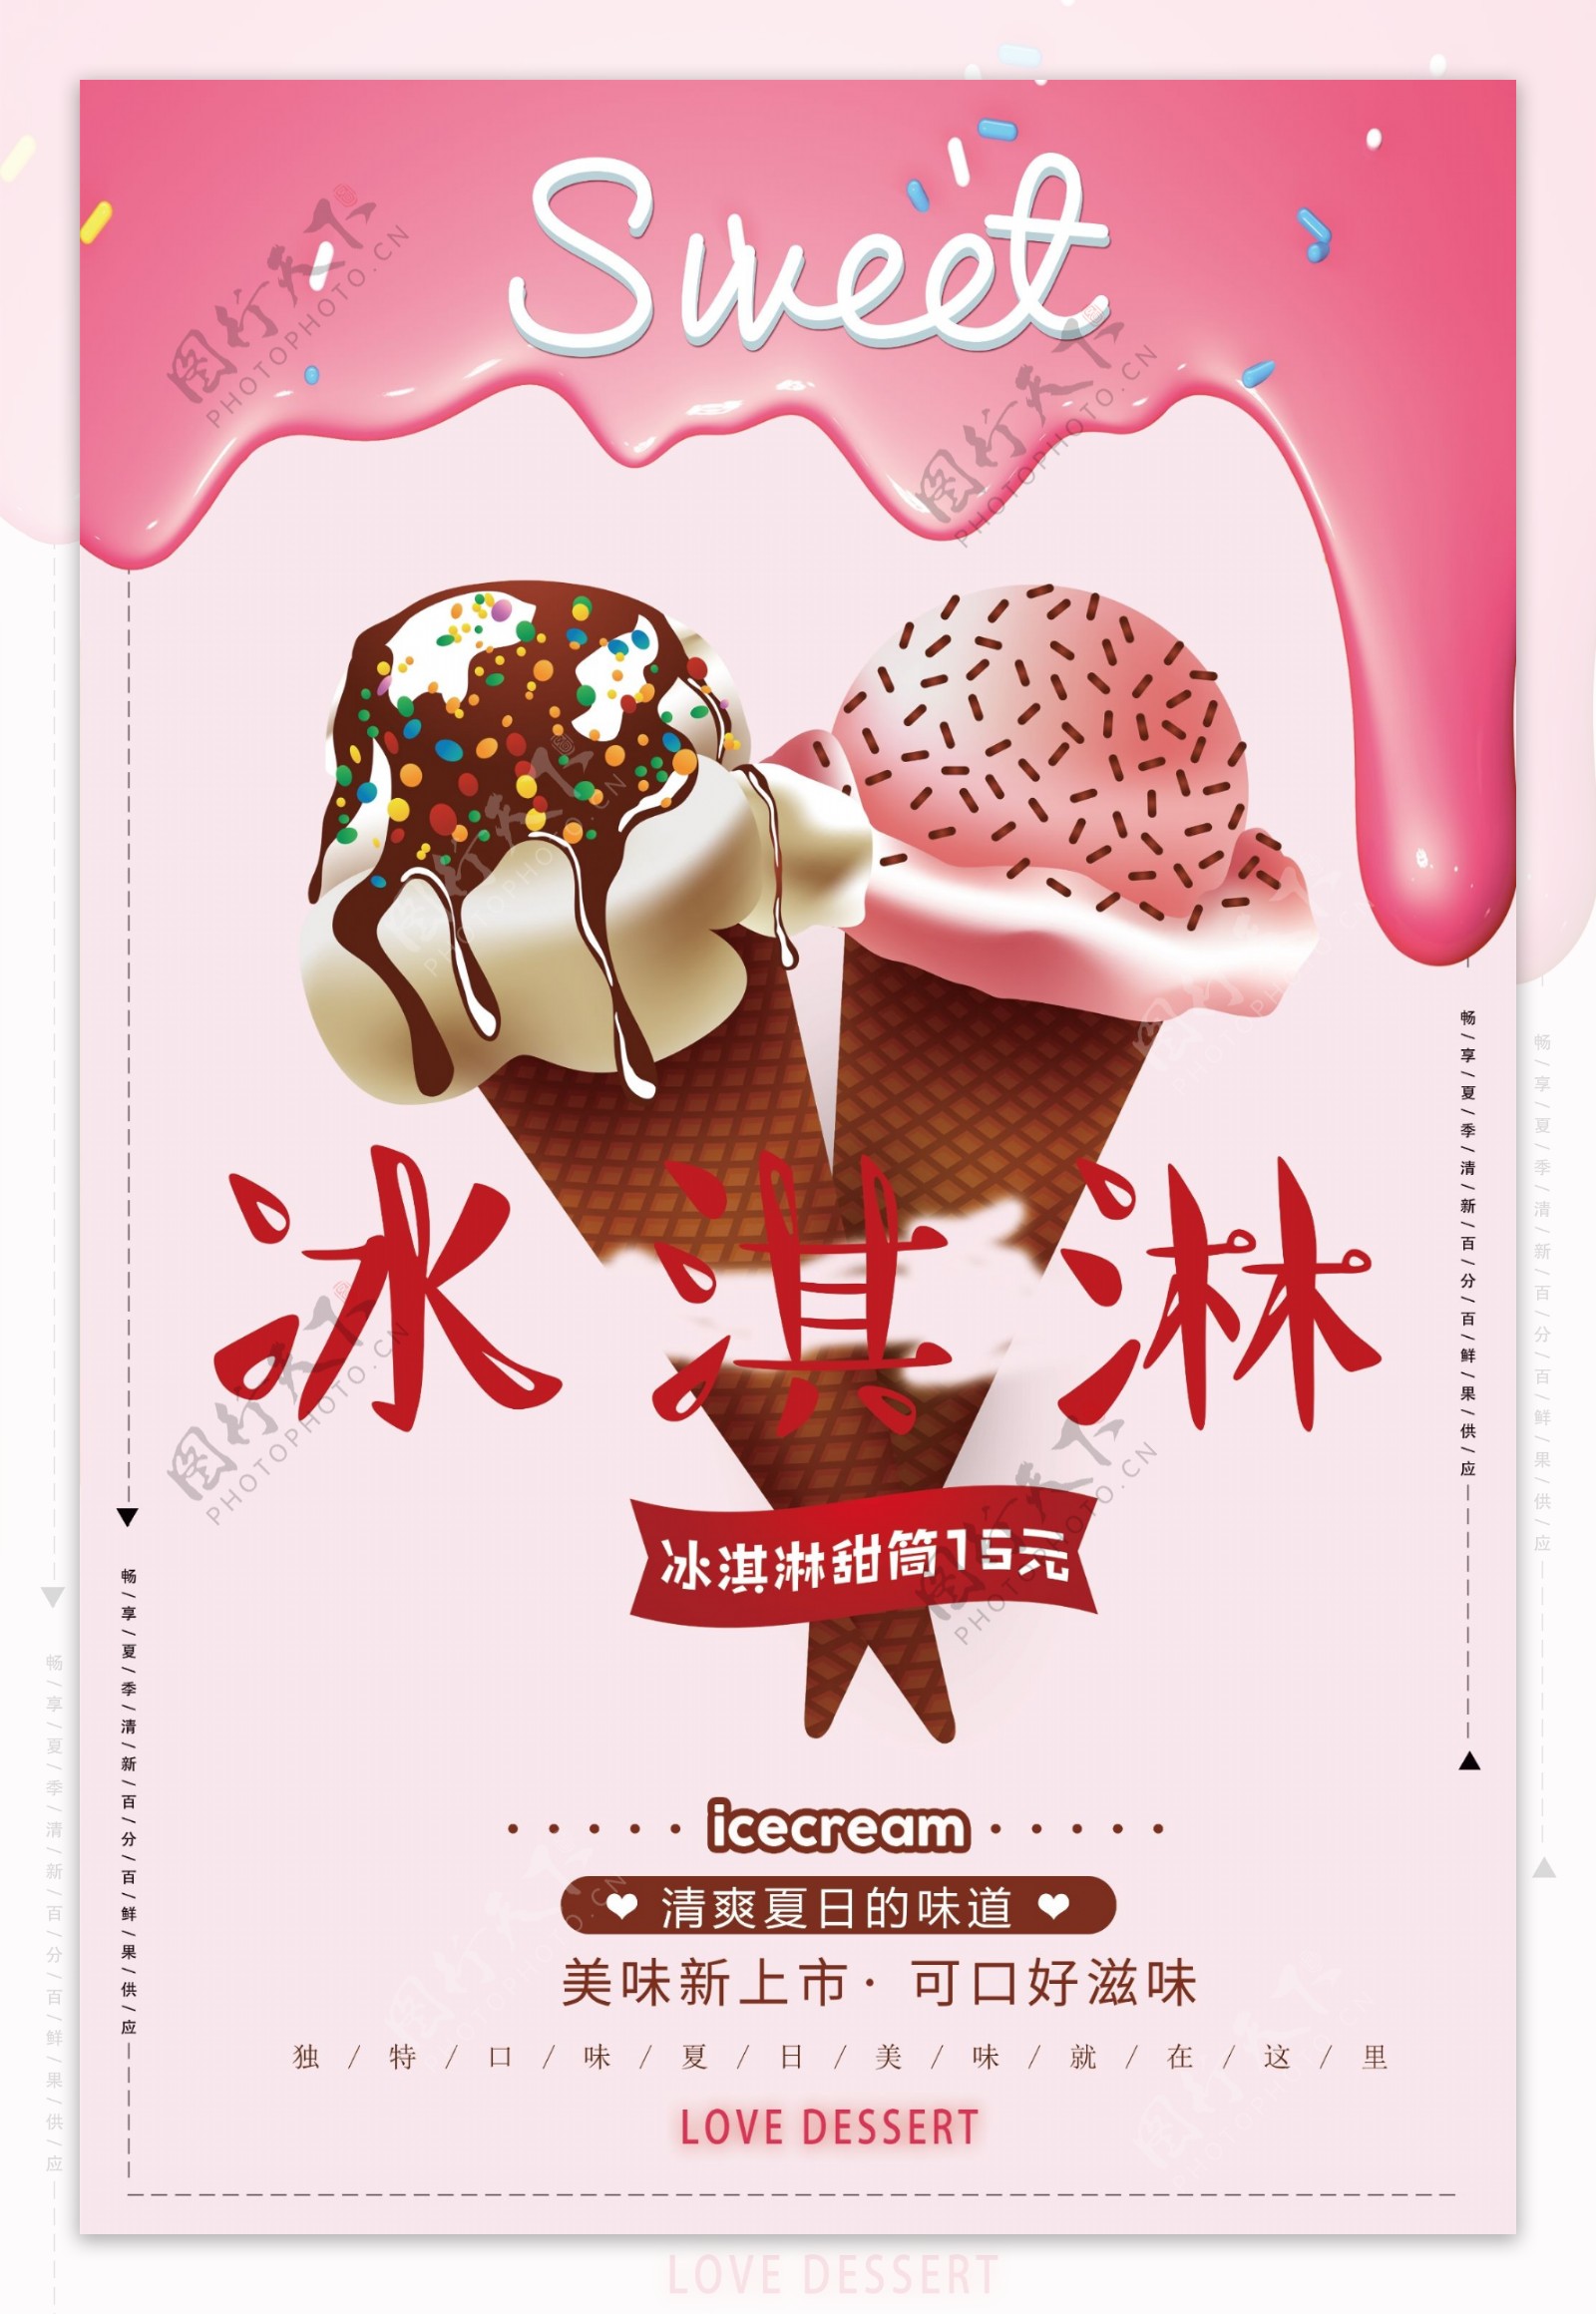 粉色清新风格冰淇淋海报